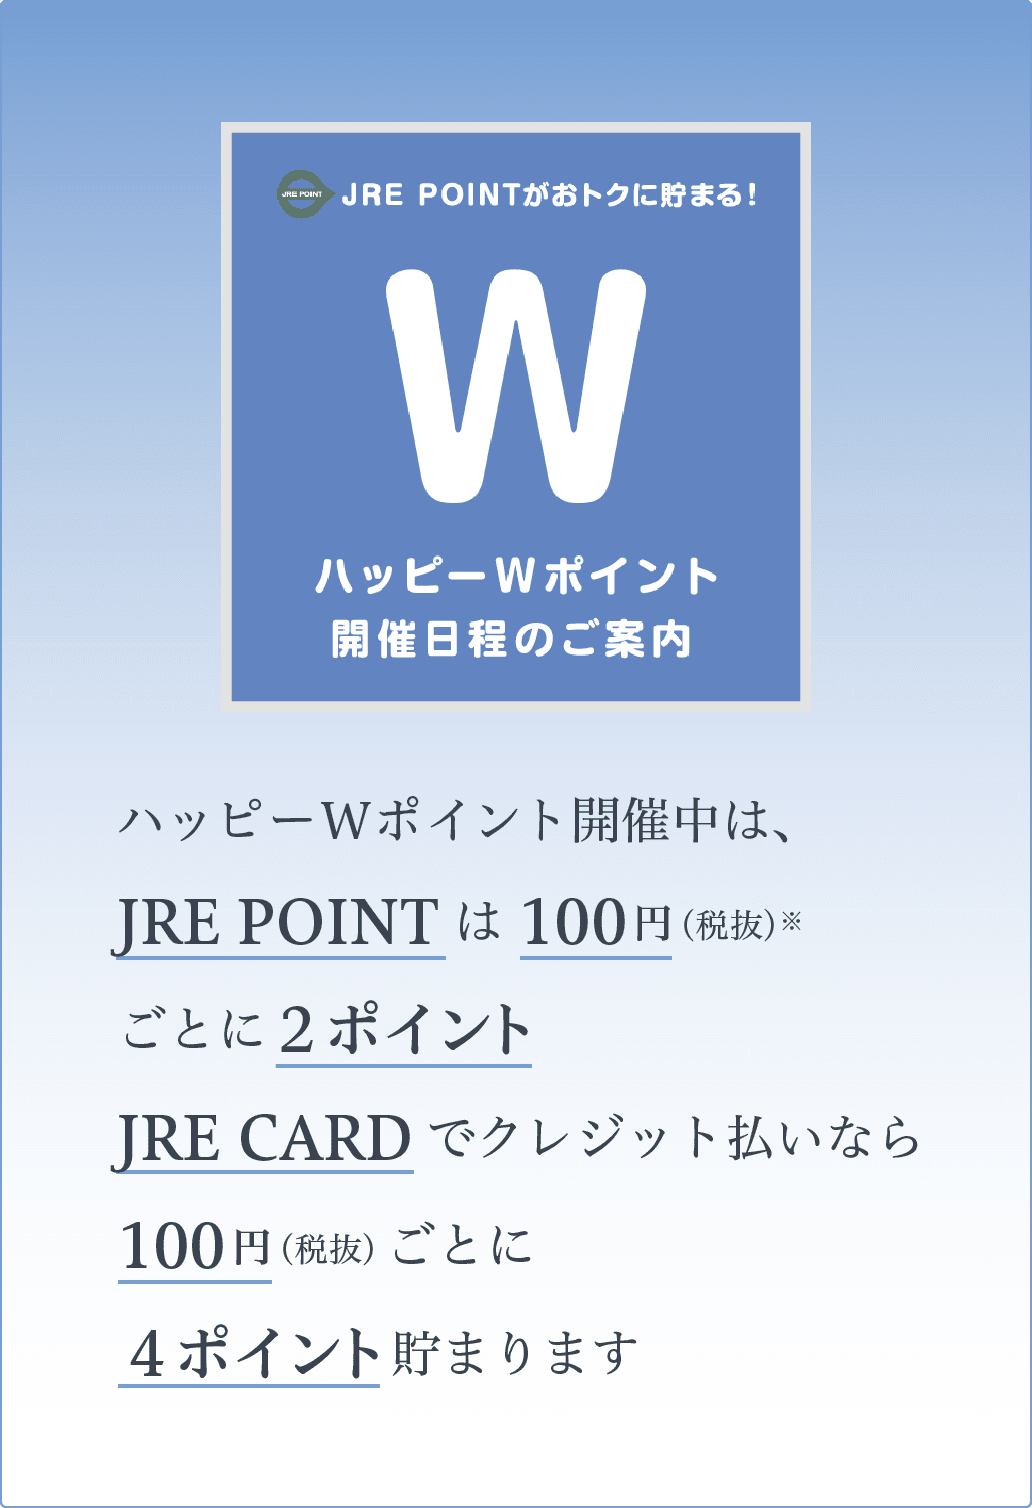 ハッピーWポイント開催中は、JRE POINTは100円（税抜）※ごとに２ポイント、JRE CARDでクレジット払いなら100円（税抜）ごとに４ポイント貯まります。